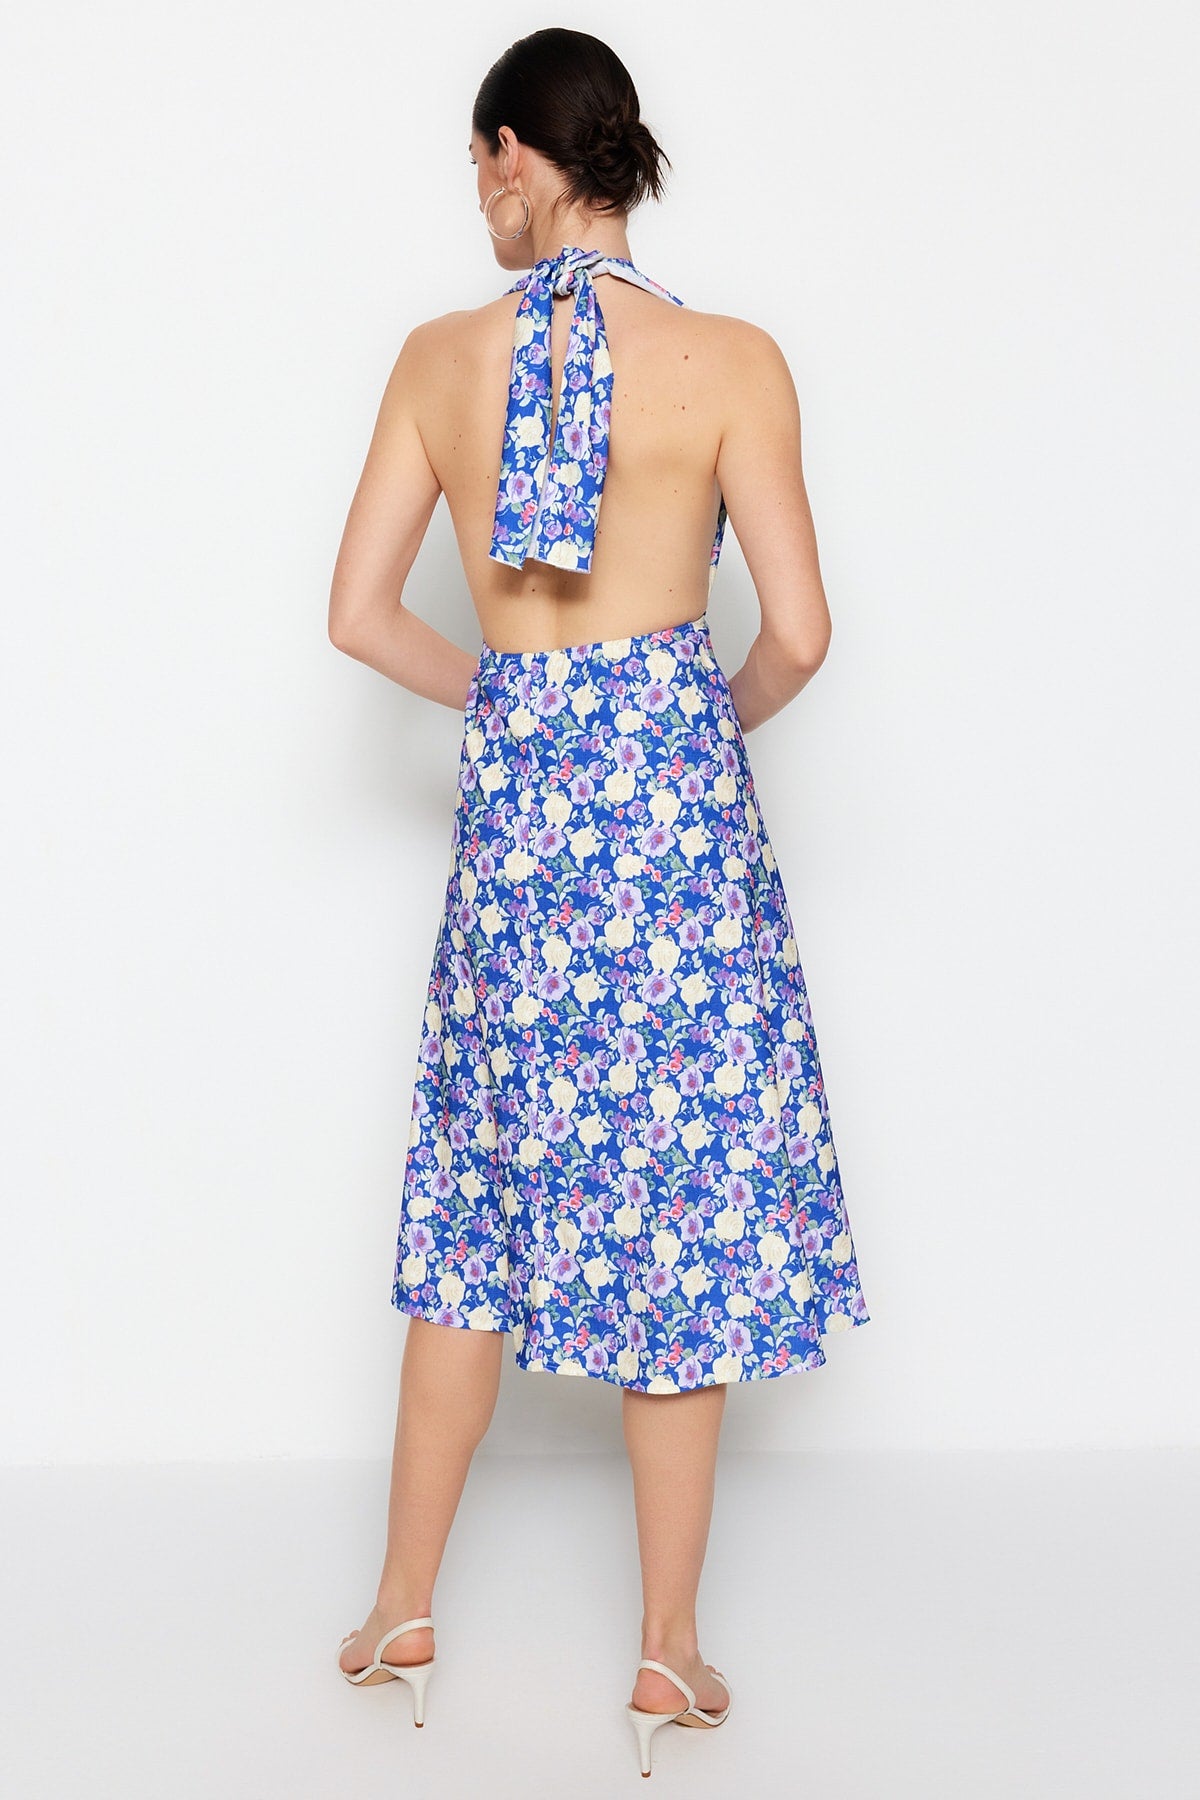 Midi Hem Dress Ruffle Floral Summer Dress 0503